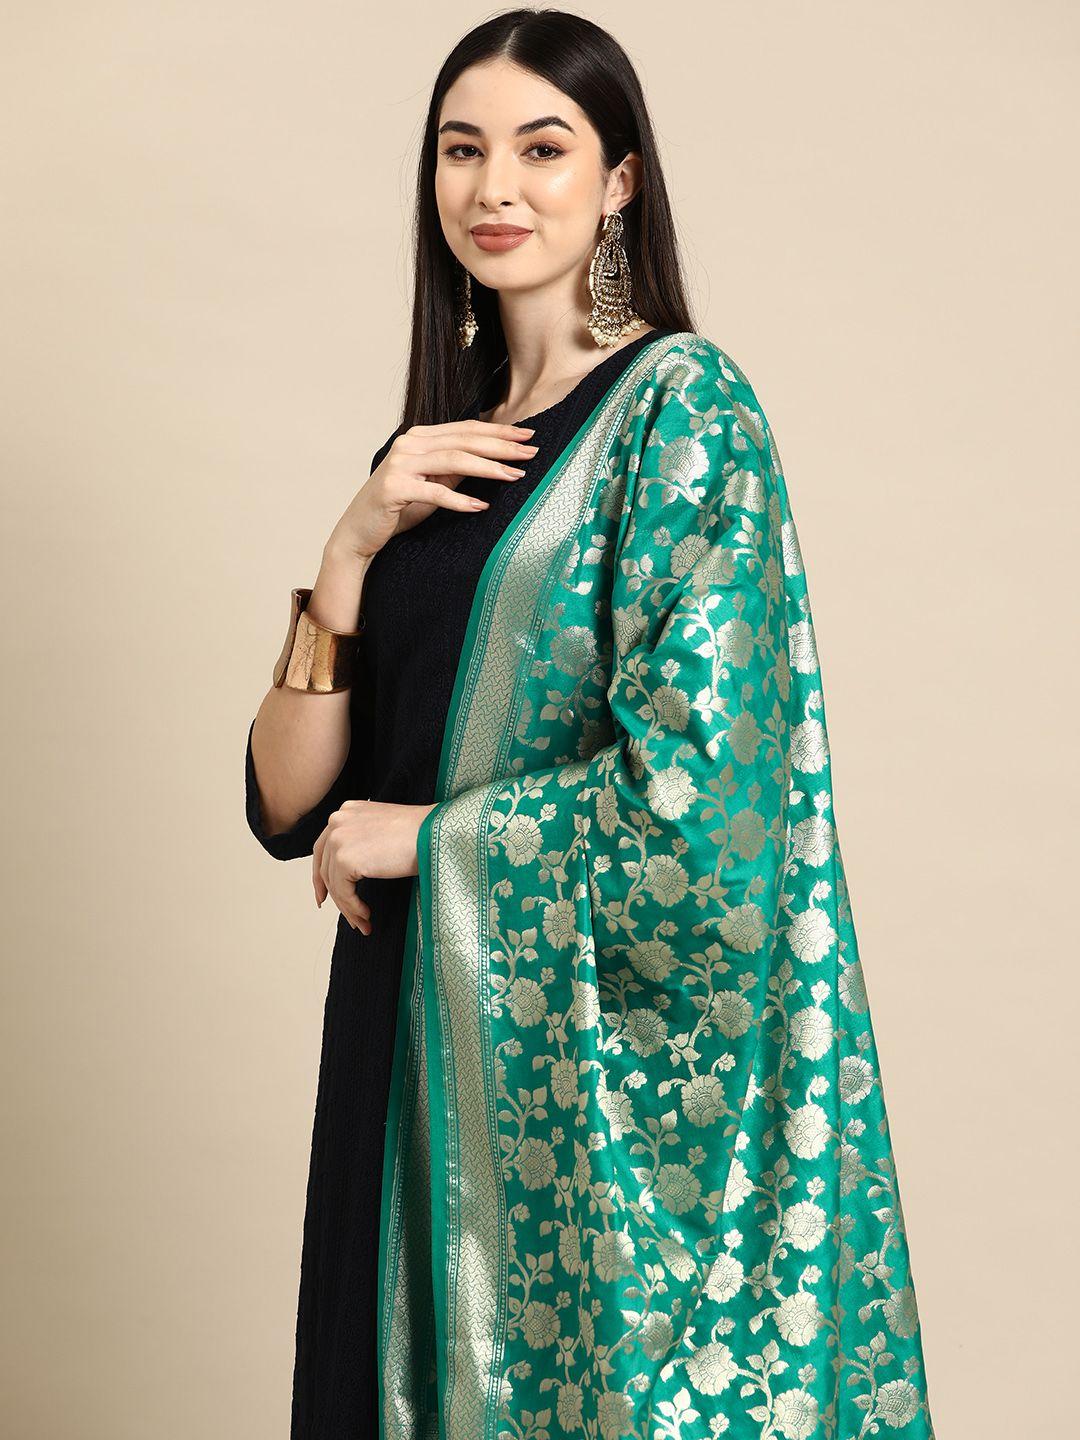 banarasi-style-woven-design-art-silk-dupatta-with-zari